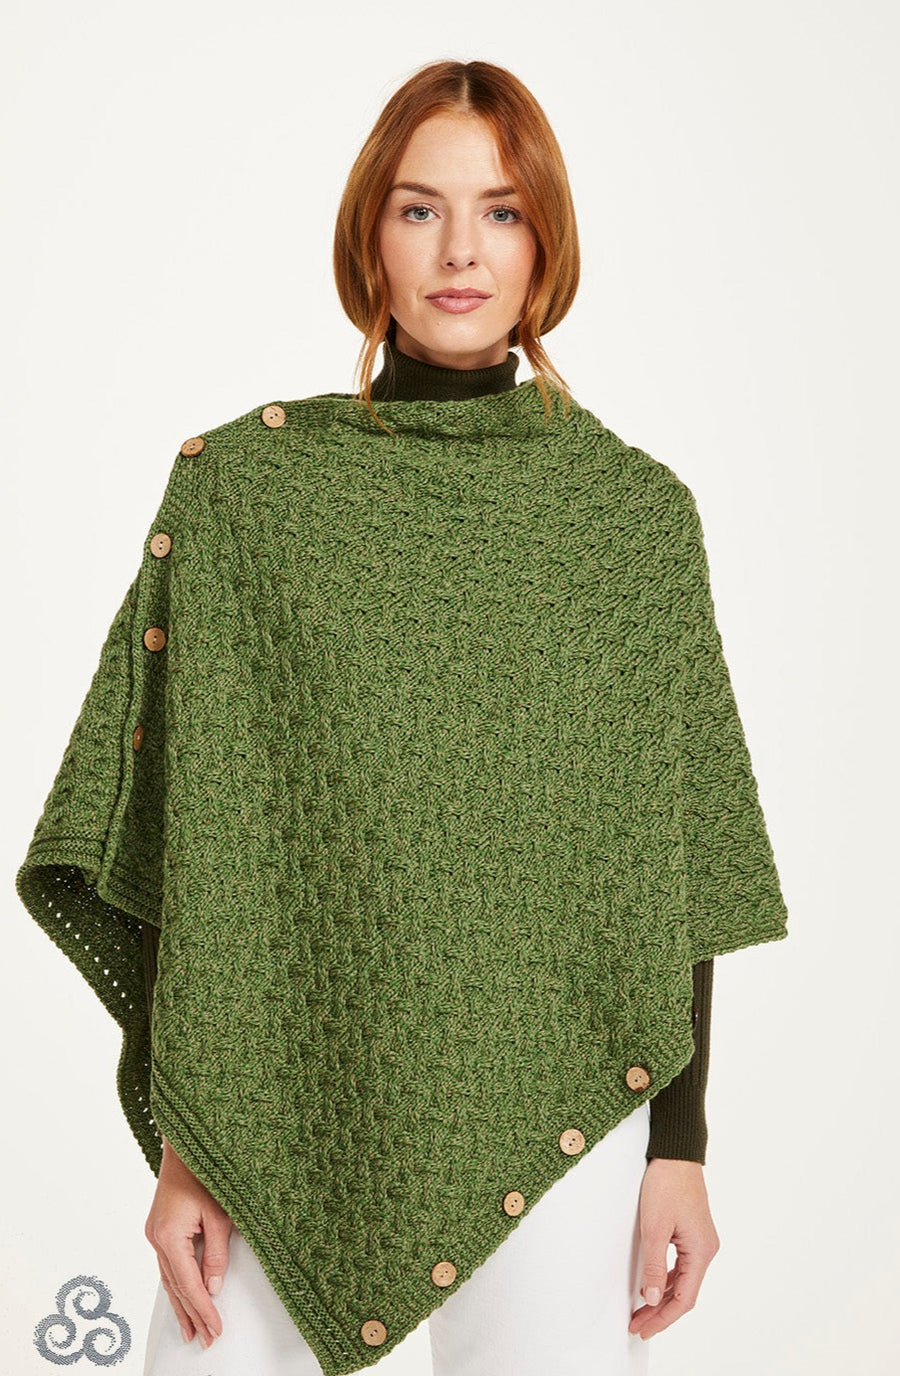 Poncho aran knit